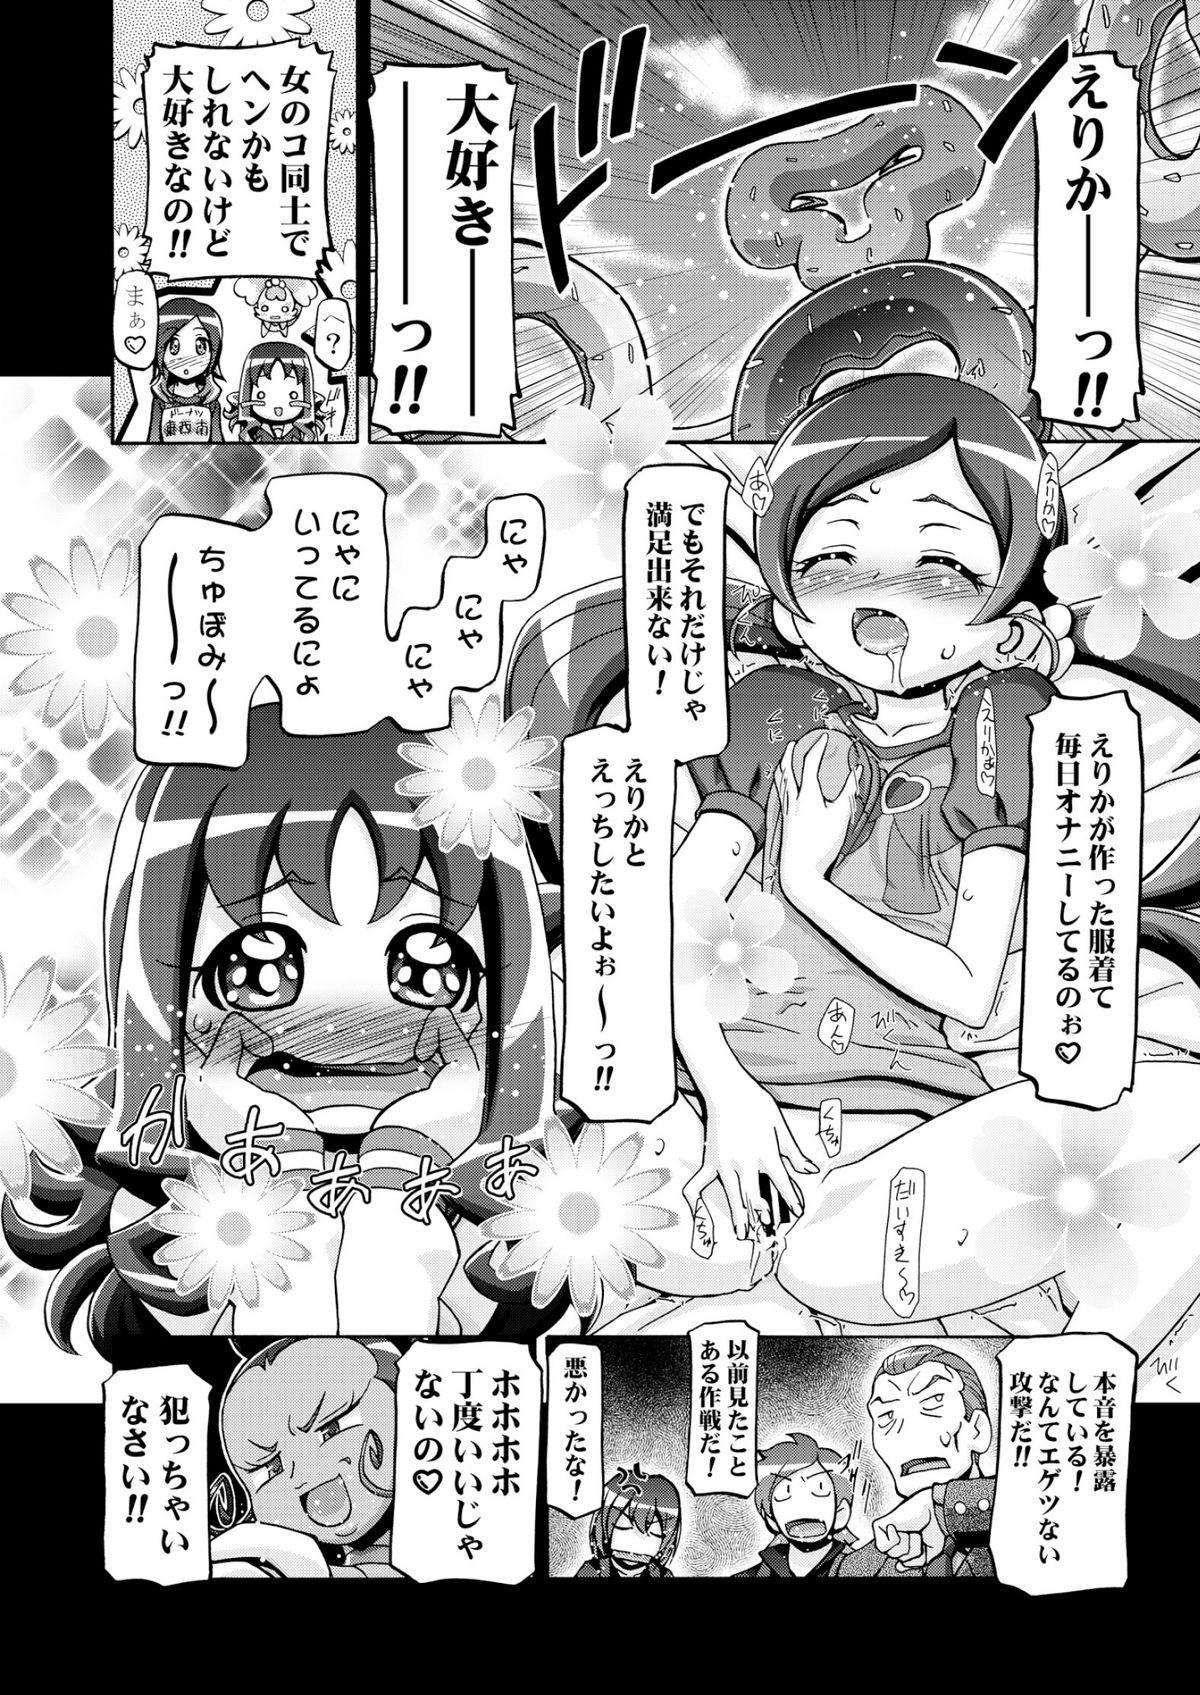 Female Orgasm Hato puni - Heartcatch precure Wild - Page 11